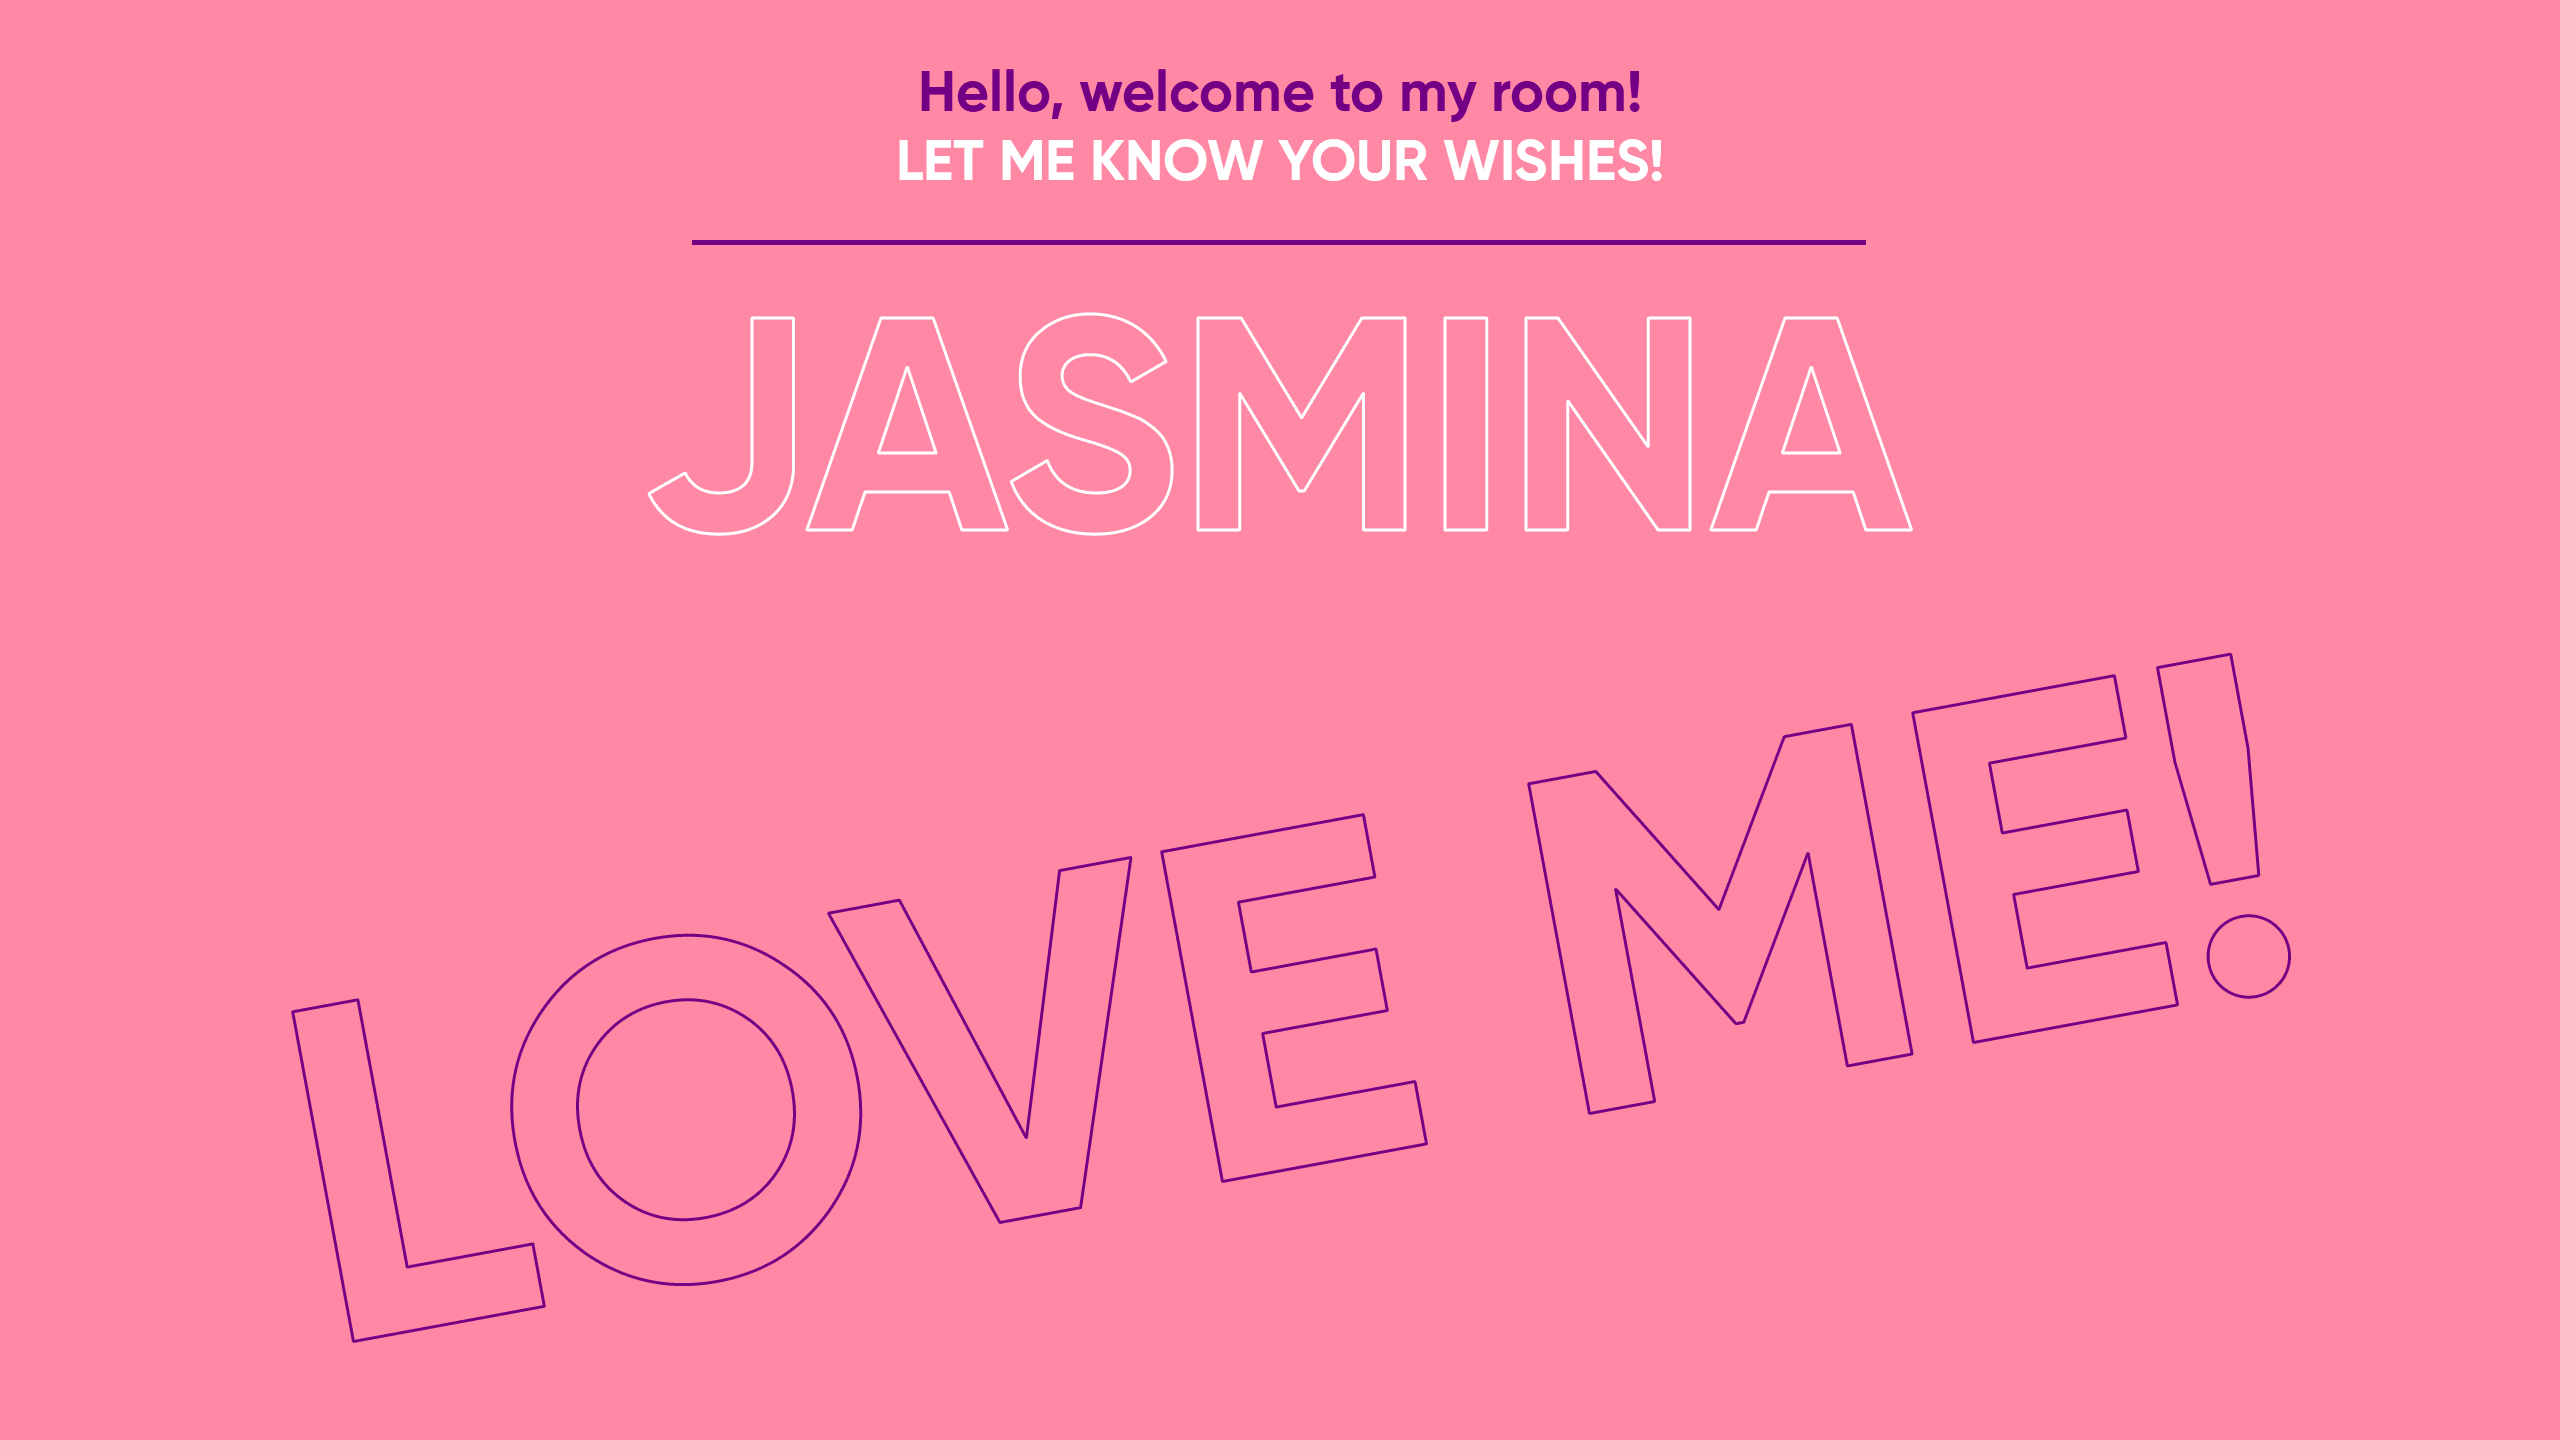 Jasmin-Style Hello! image: 1